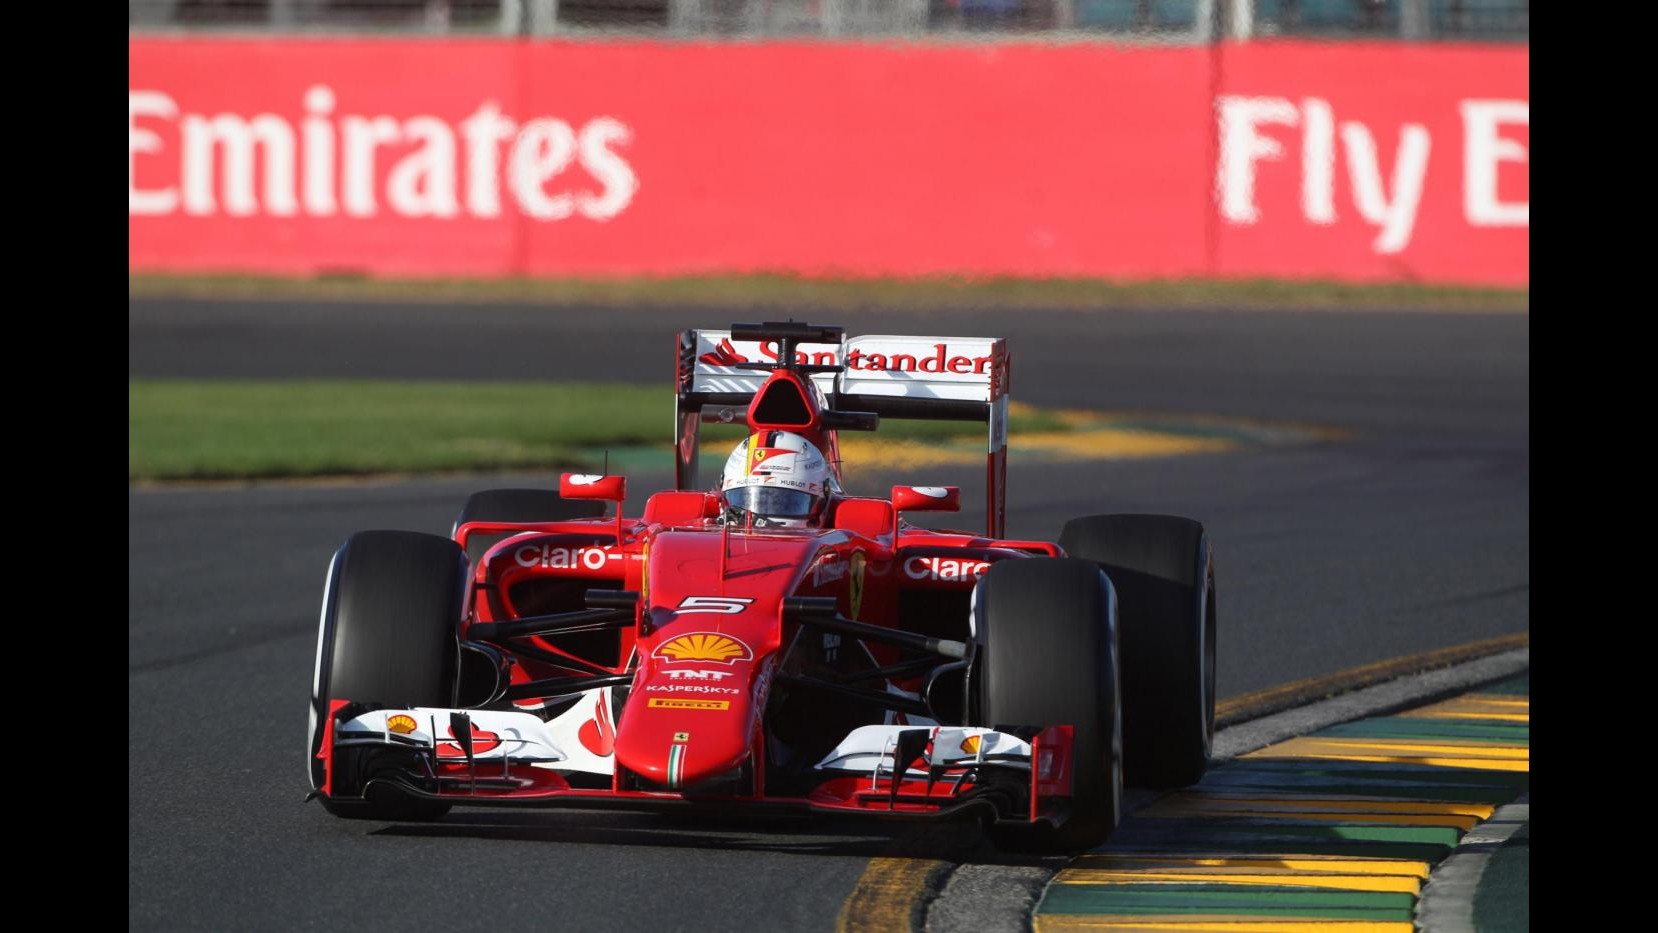 F1, Mercedes dominano libere in Australia. Ferrari ok: Vettel 3°, Raikkonen 4°